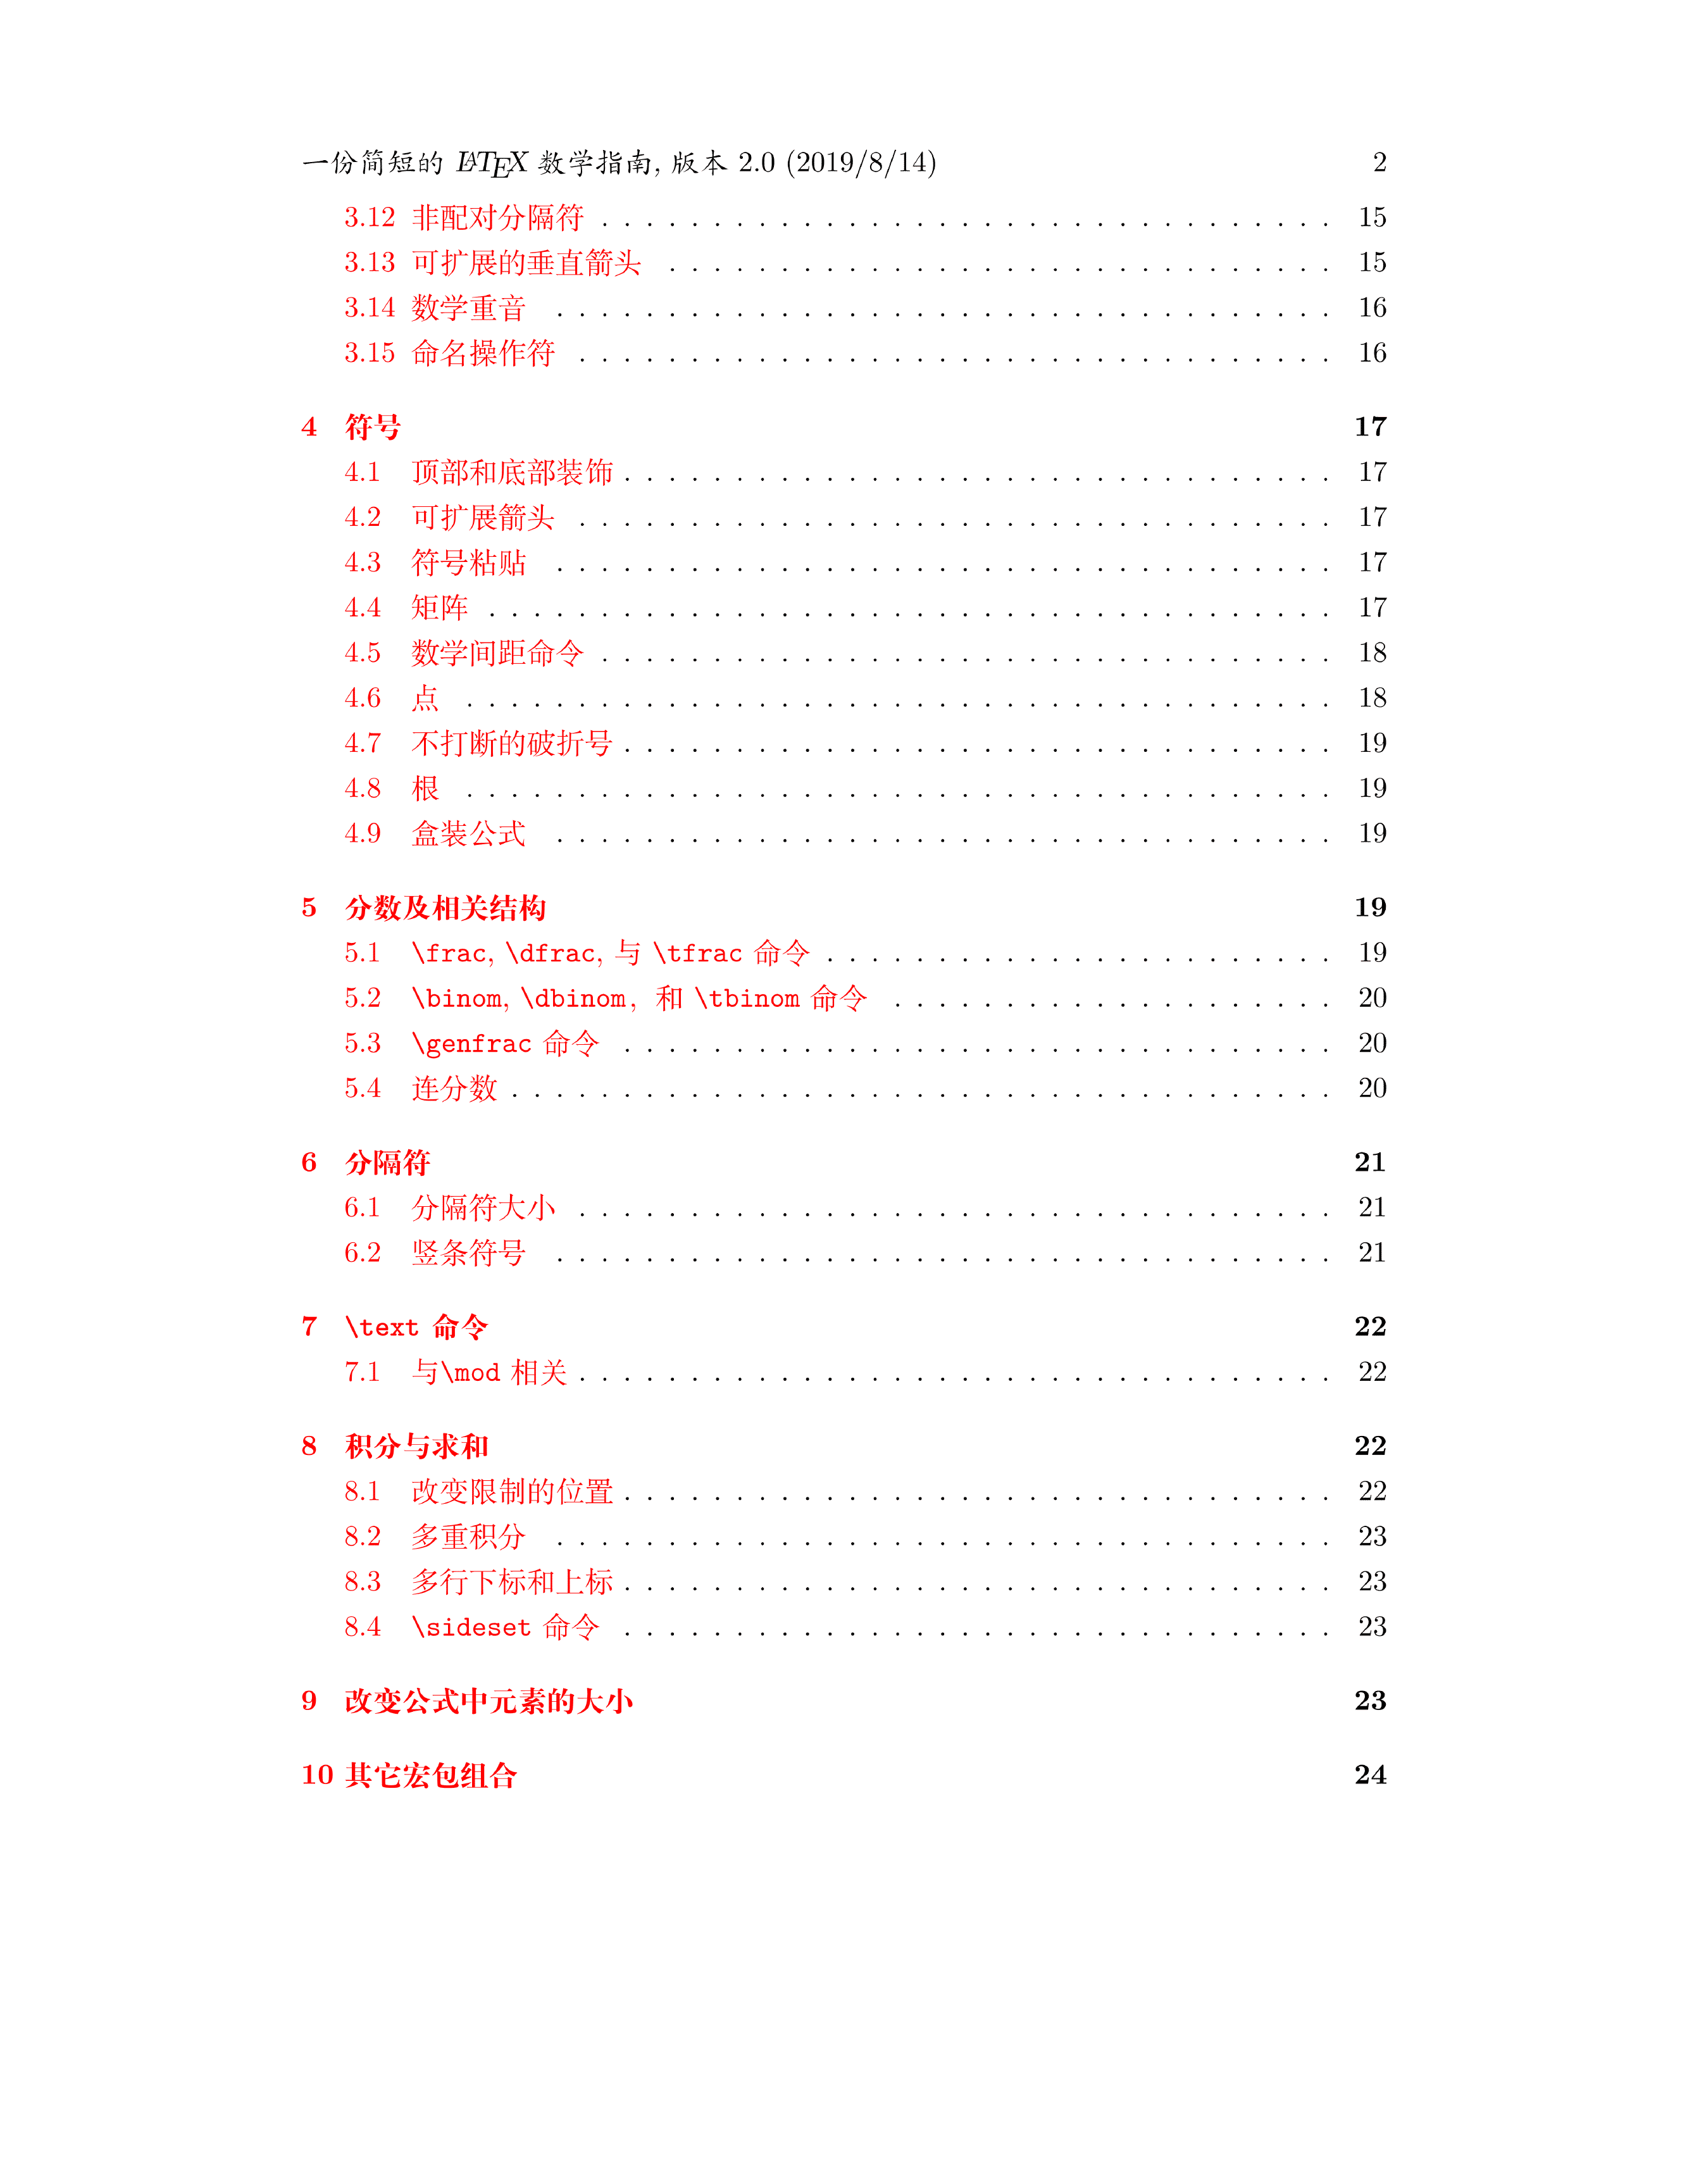 一份简短的 LaTeX 数学指南 - Short Math Guide for LaTeX 中译